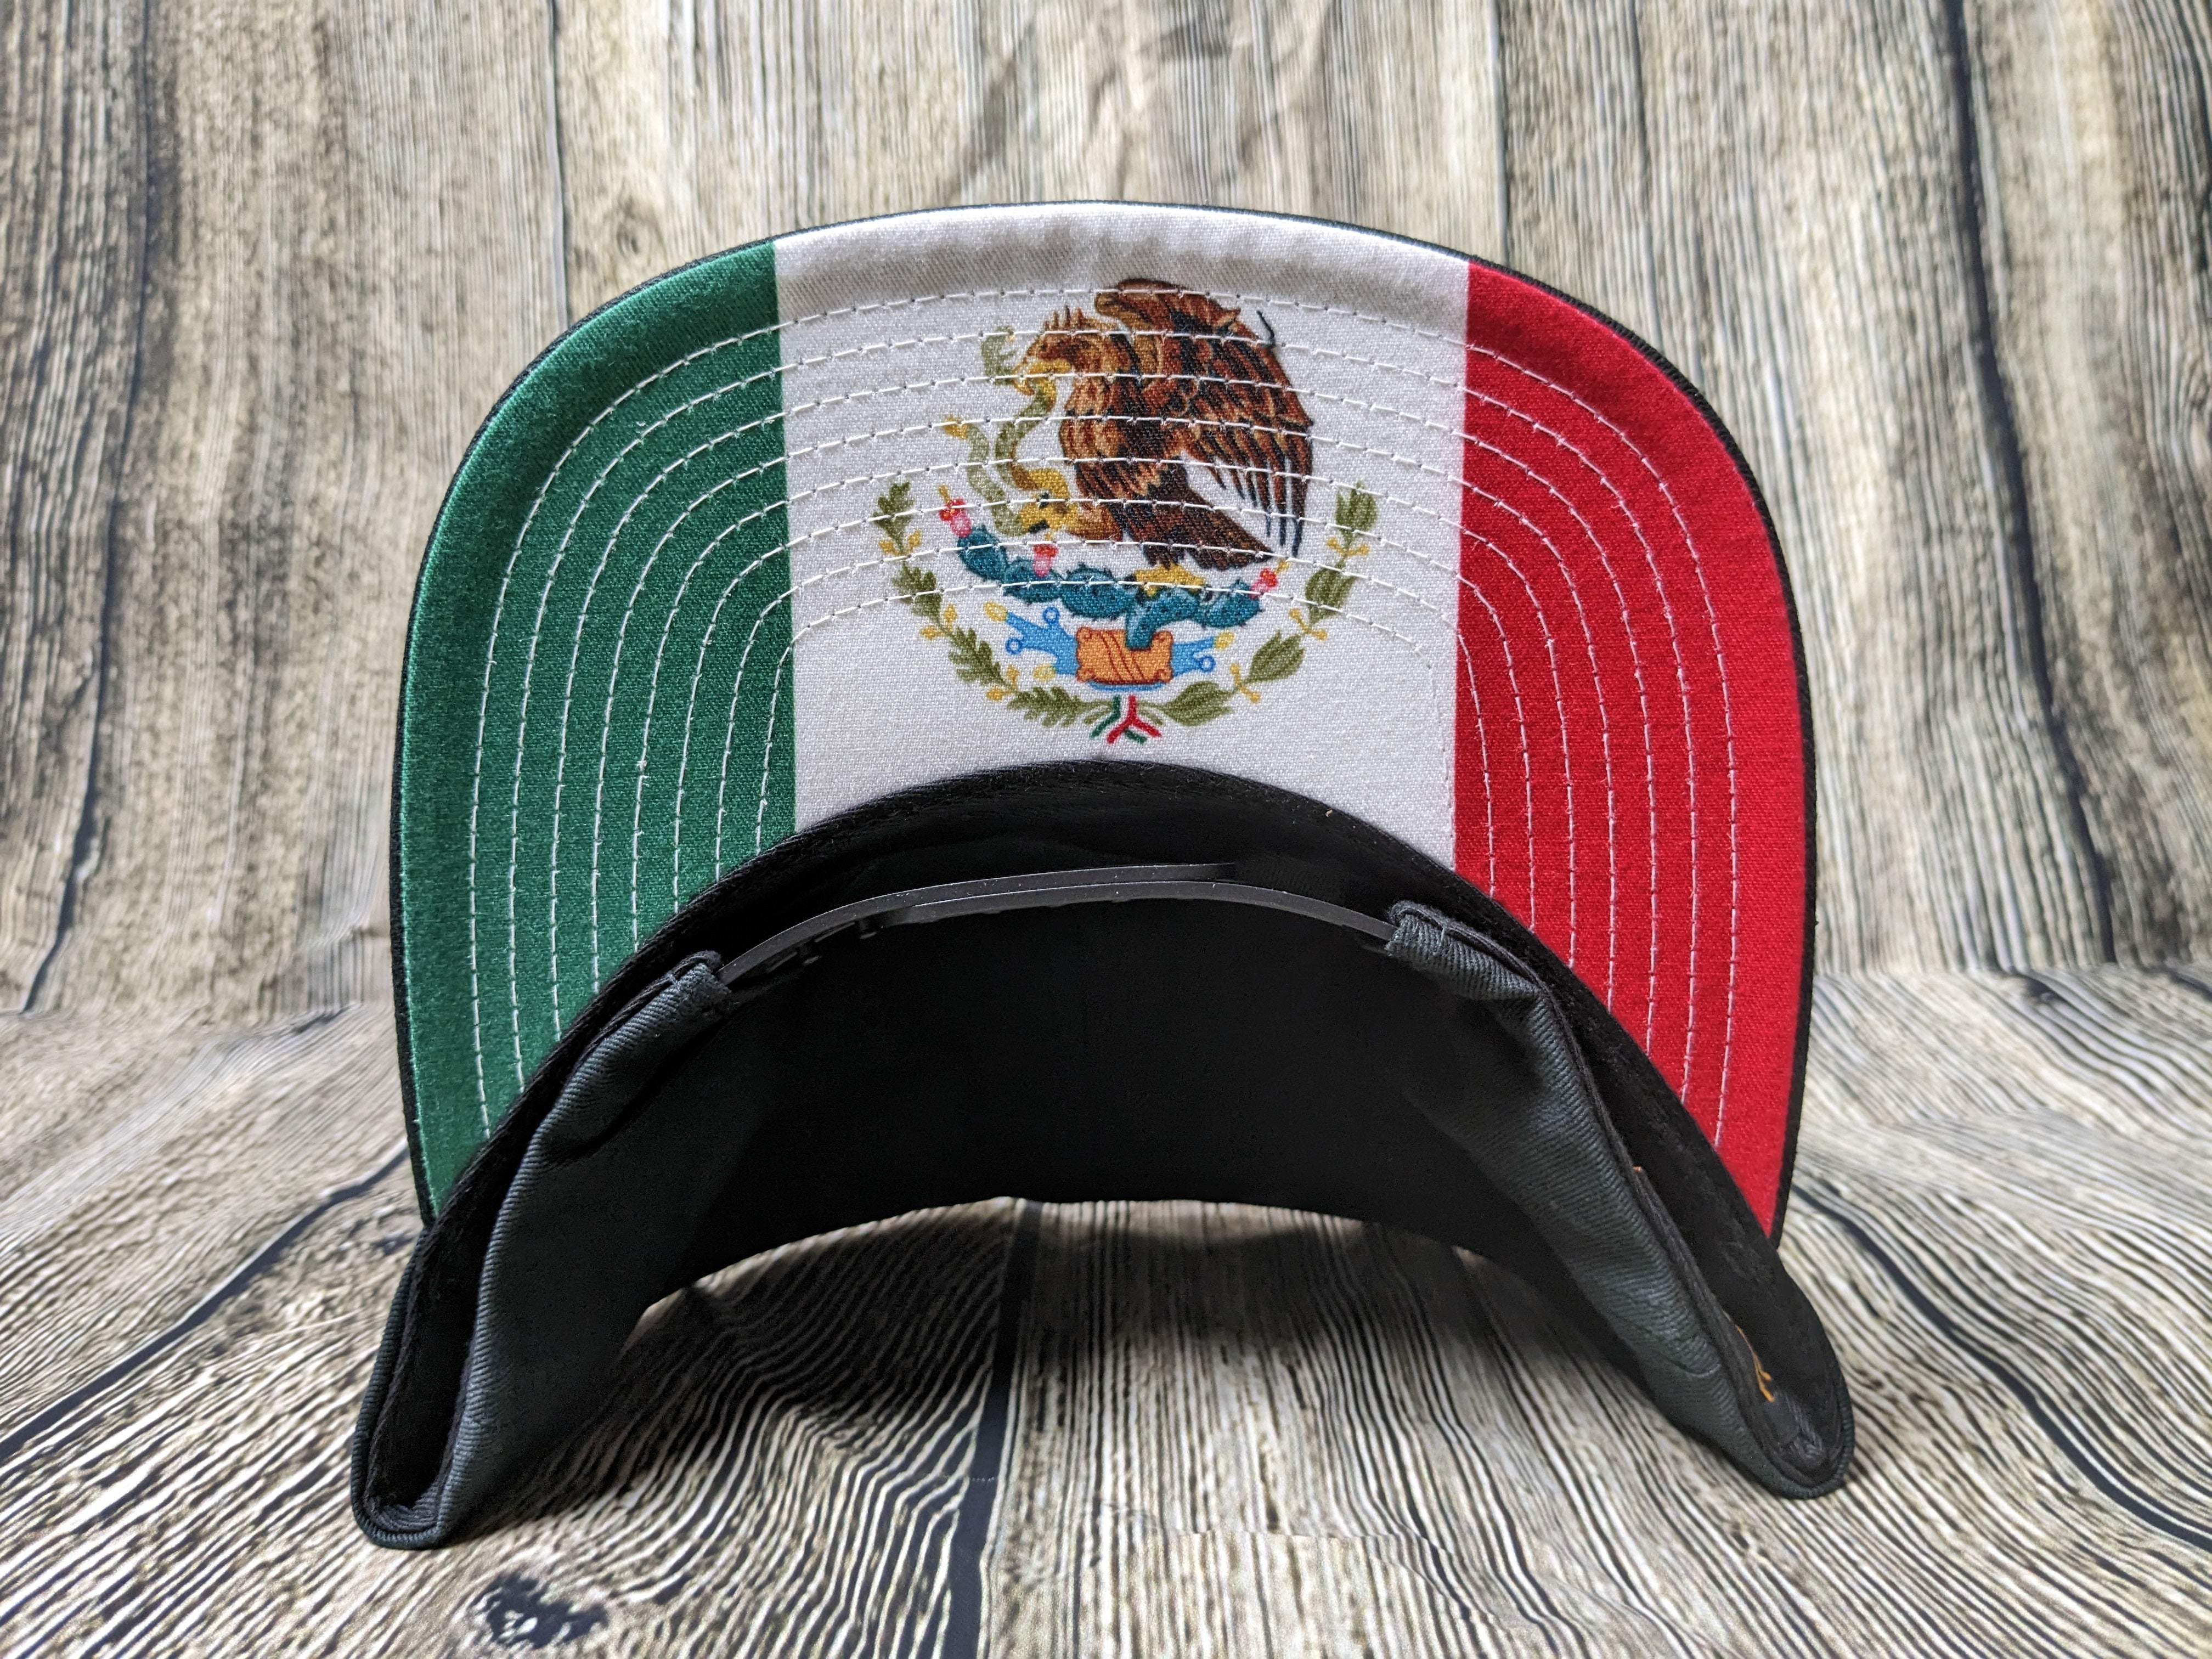 No Pasa Nada - Mexico Flag Premium Snapback Hat